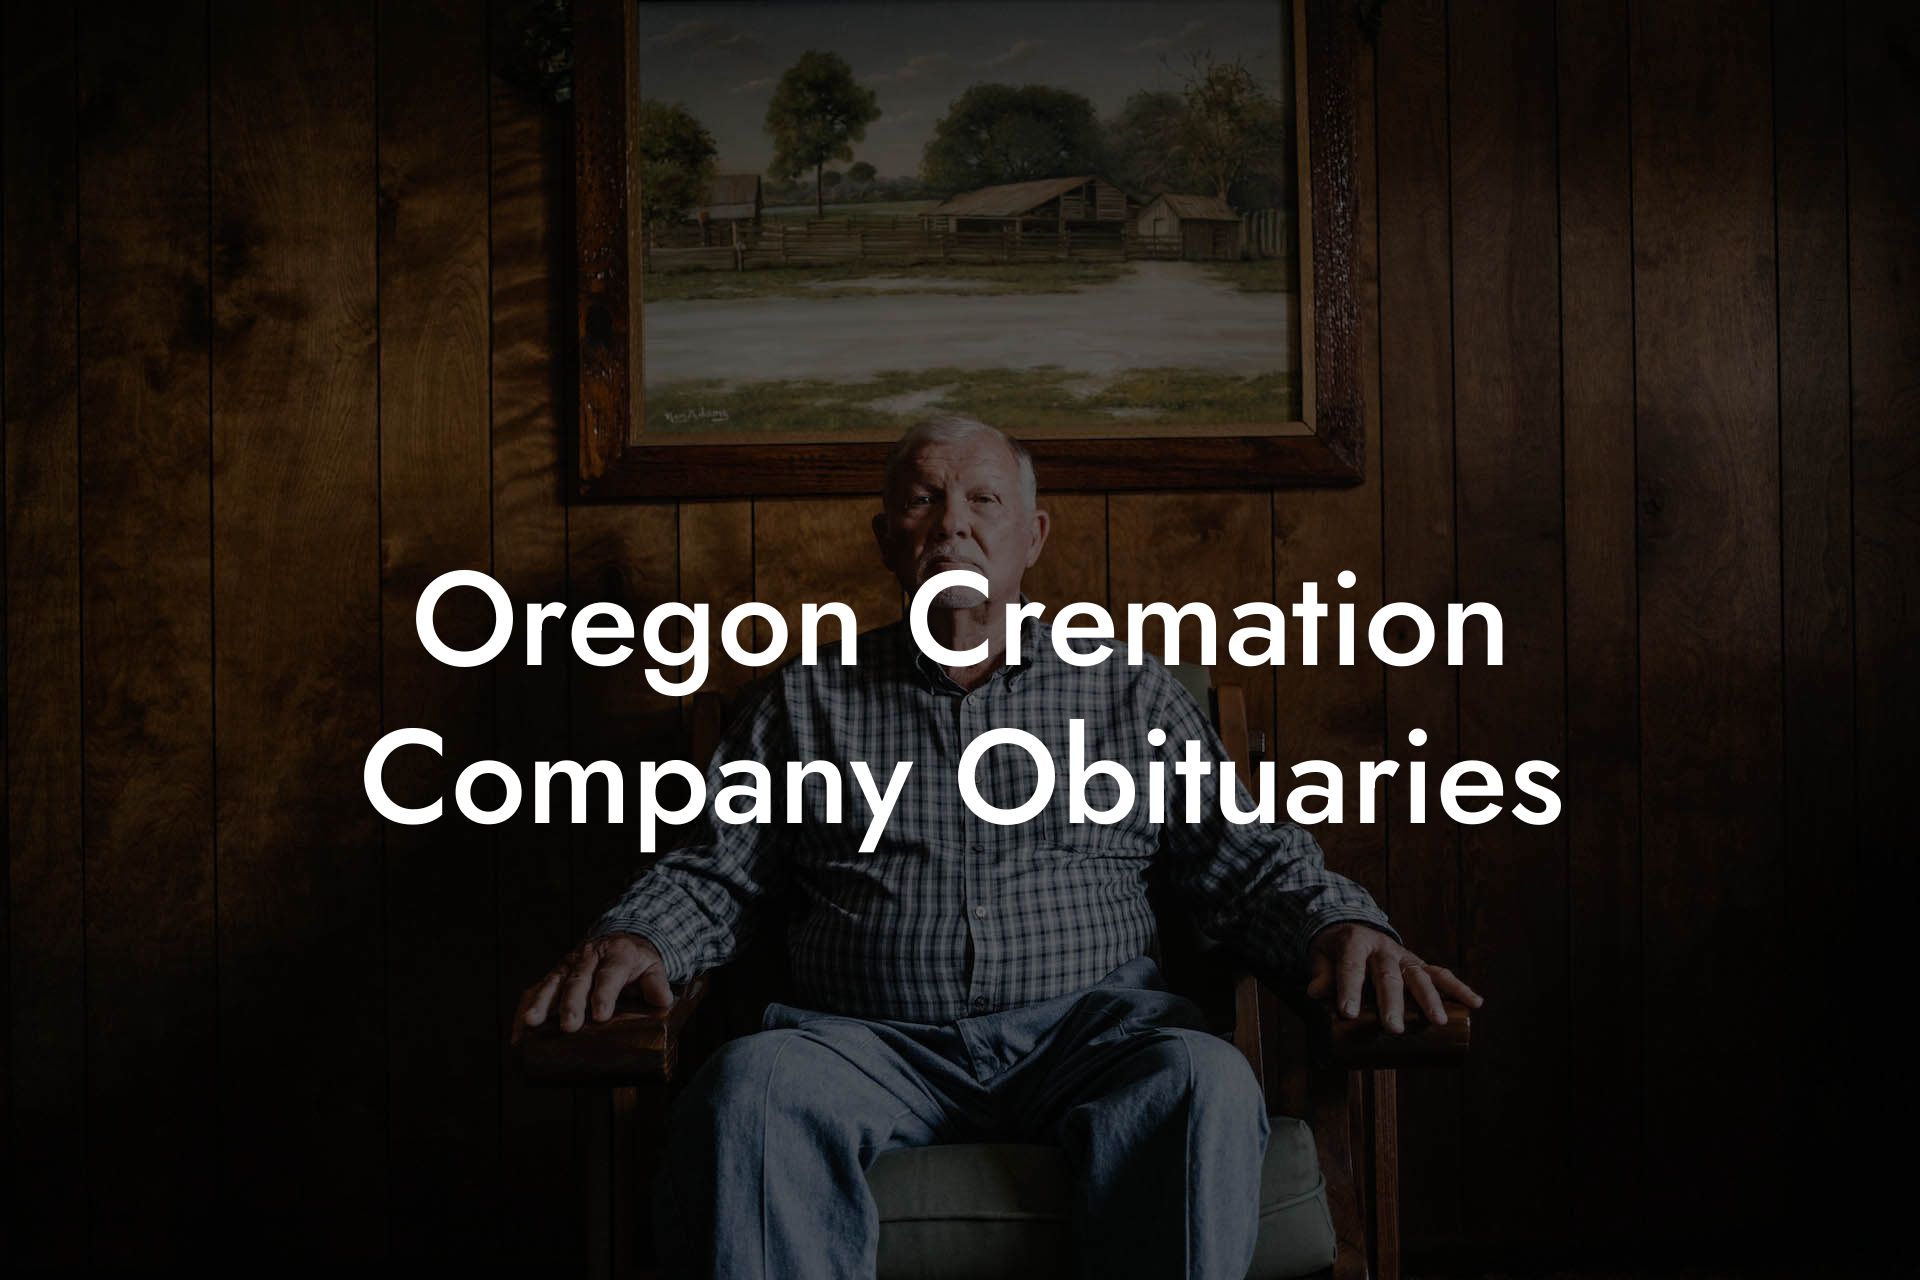 Oregon Cremation Company Obituaries